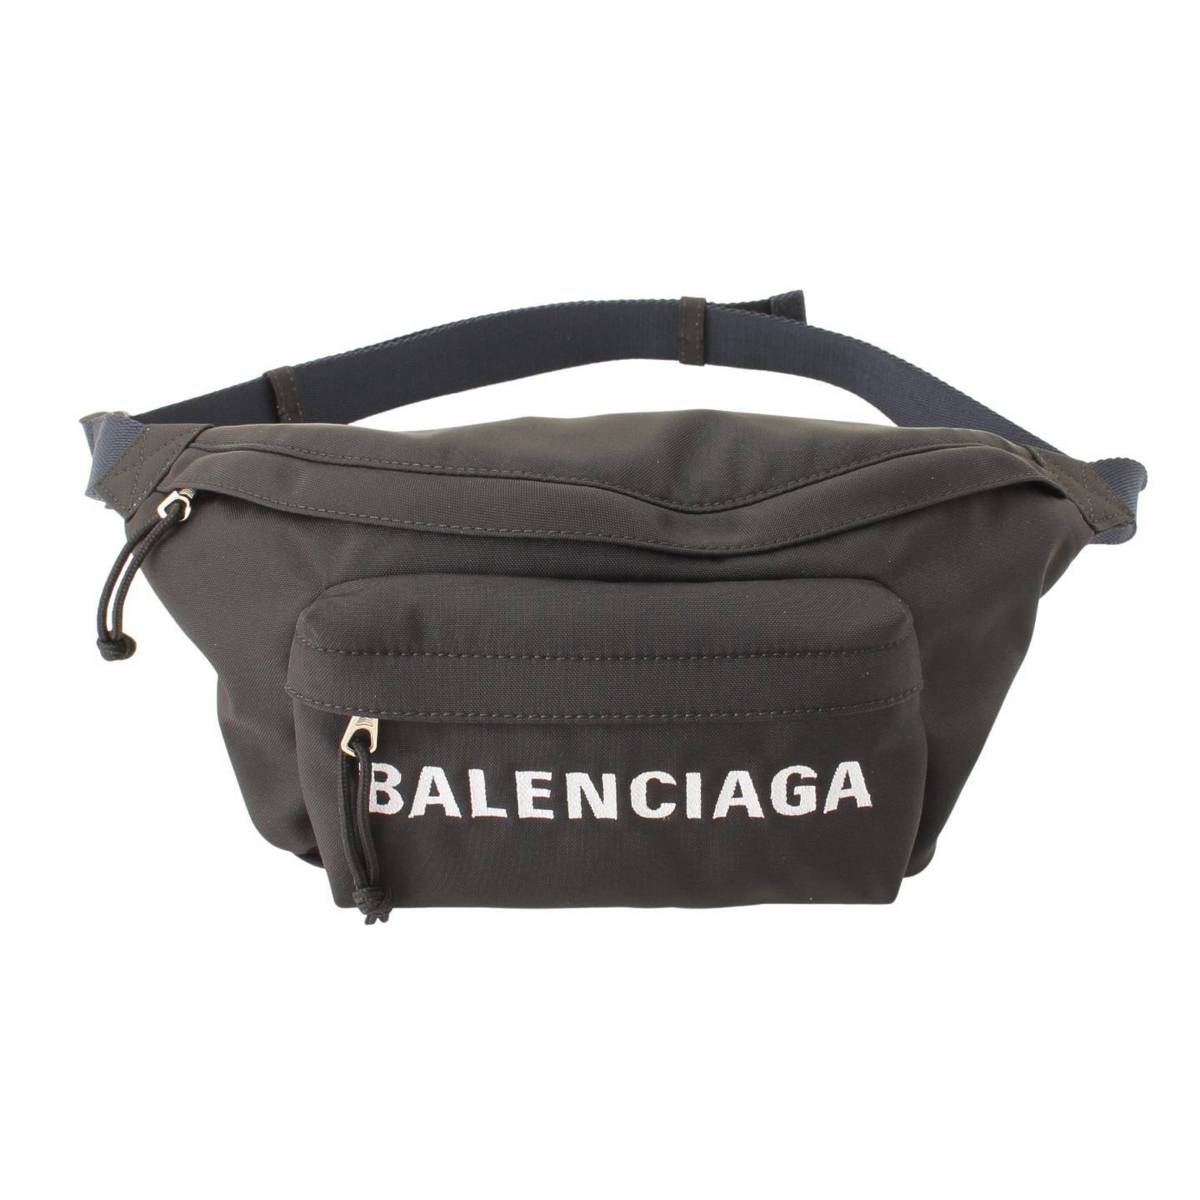 バレンシアガ(Balenciaga) ロゴ刺繍 ナイロン ウエストポーチ ボディバッグ 533009 ブラック